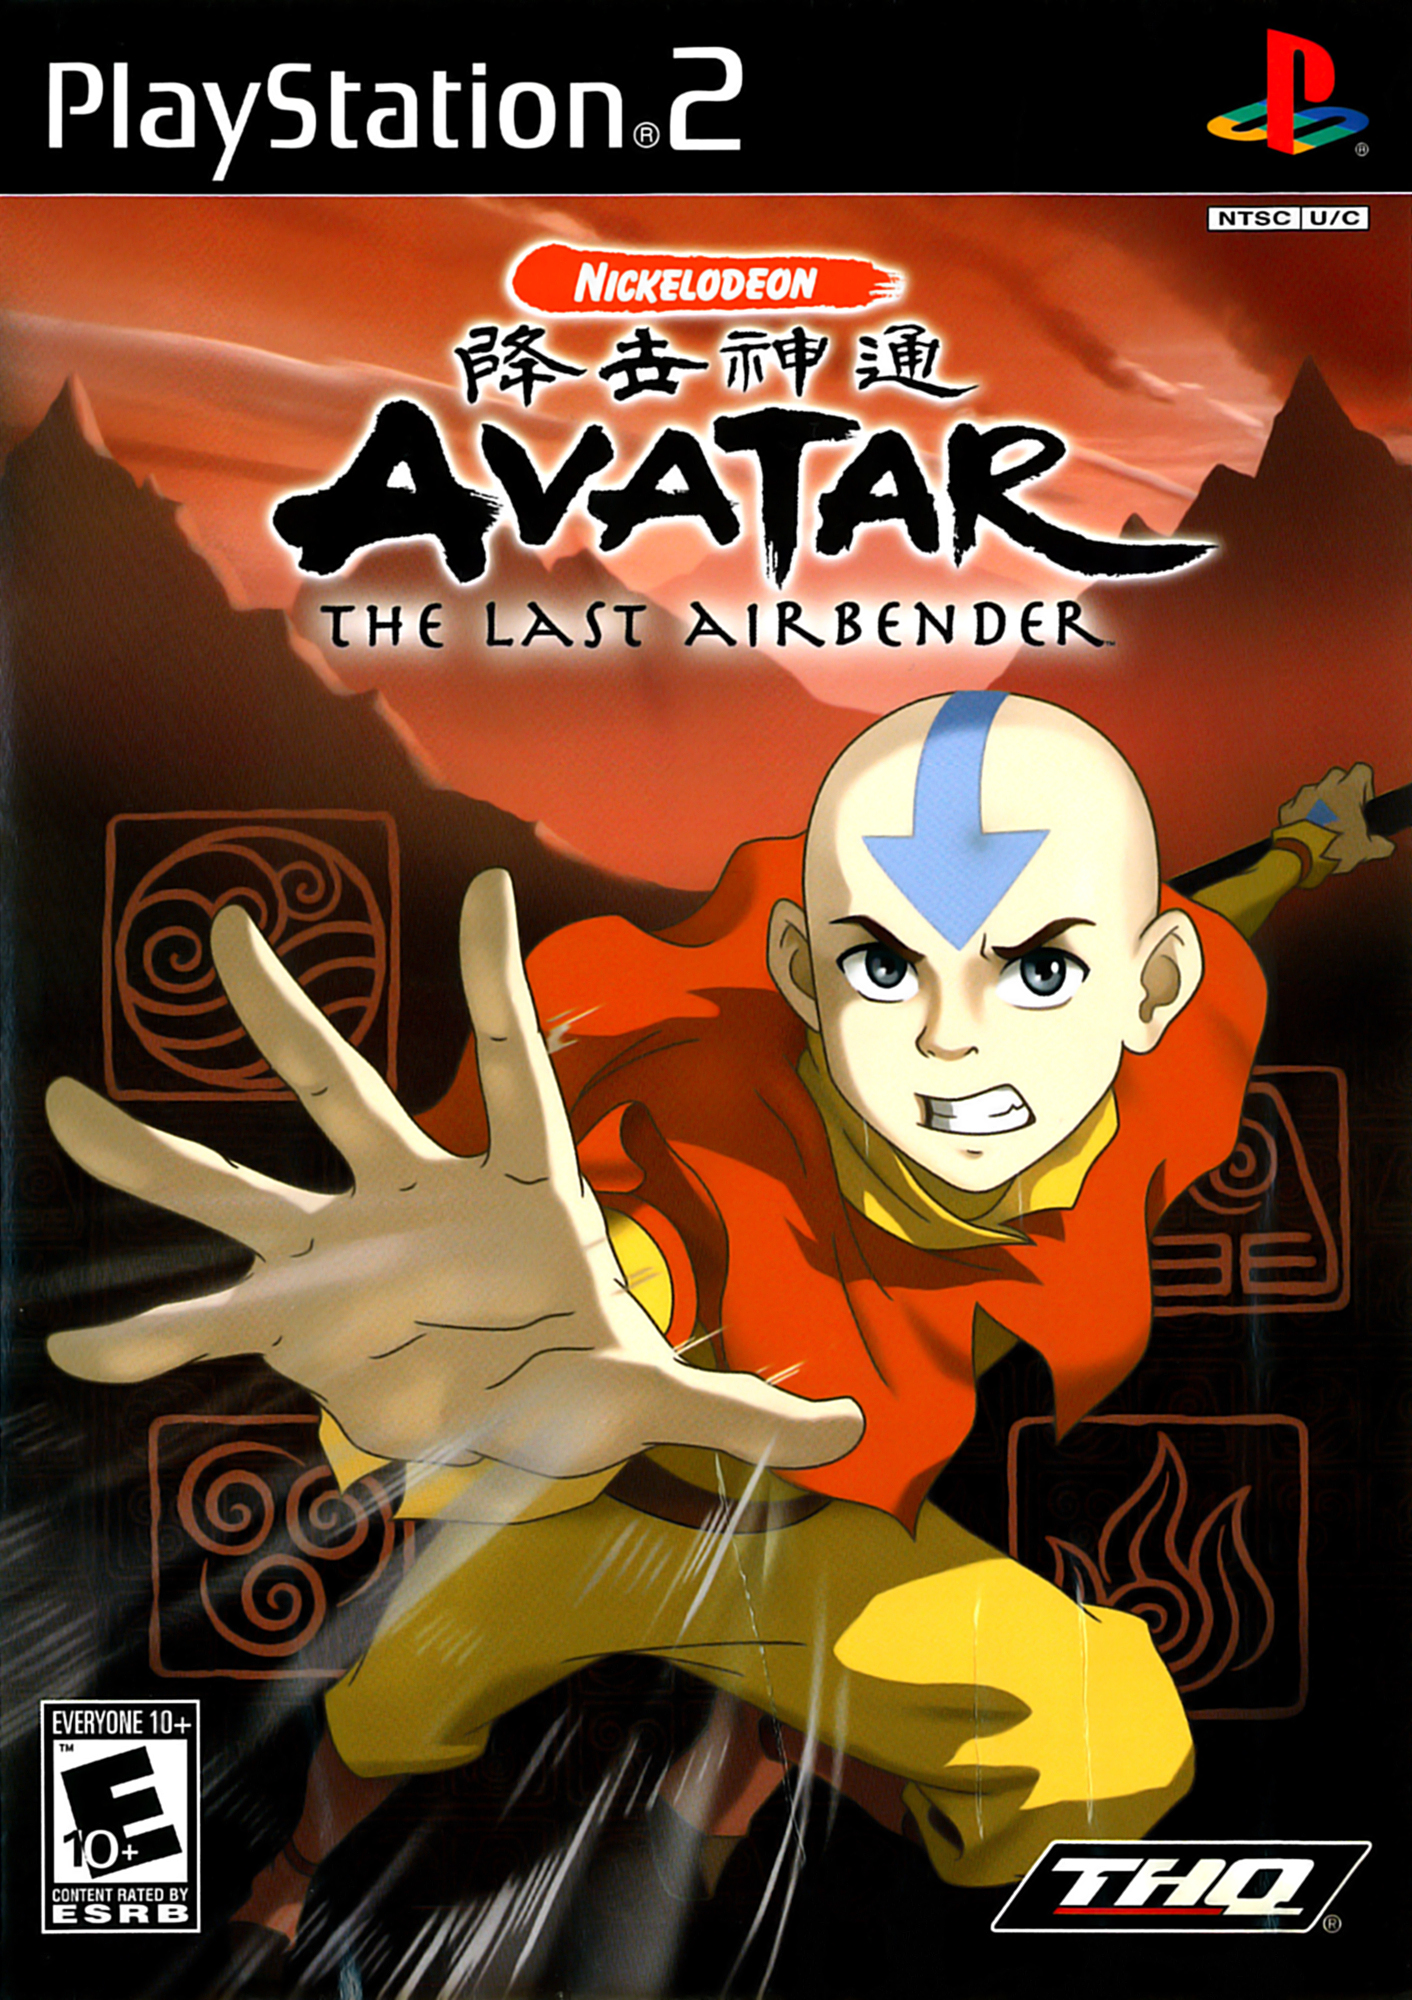 Bộ phim truyền hình Avatar đã trở thành một trong những bộ phim kinh điển không thể thiếu cho bất kỳ ai yêu thích anime và đam mê thế giới ma thuật. Hãy nhanh chóng trải nghiệm trên PlayStation 2 để khám phá thế giới đầy kỳ diệu của những nhân vật trong phim. Mua ngay bộ game Avatar Last Airbender trên mạng với mức giá ưu đãi chỉ có trên internet của chúng tôi.